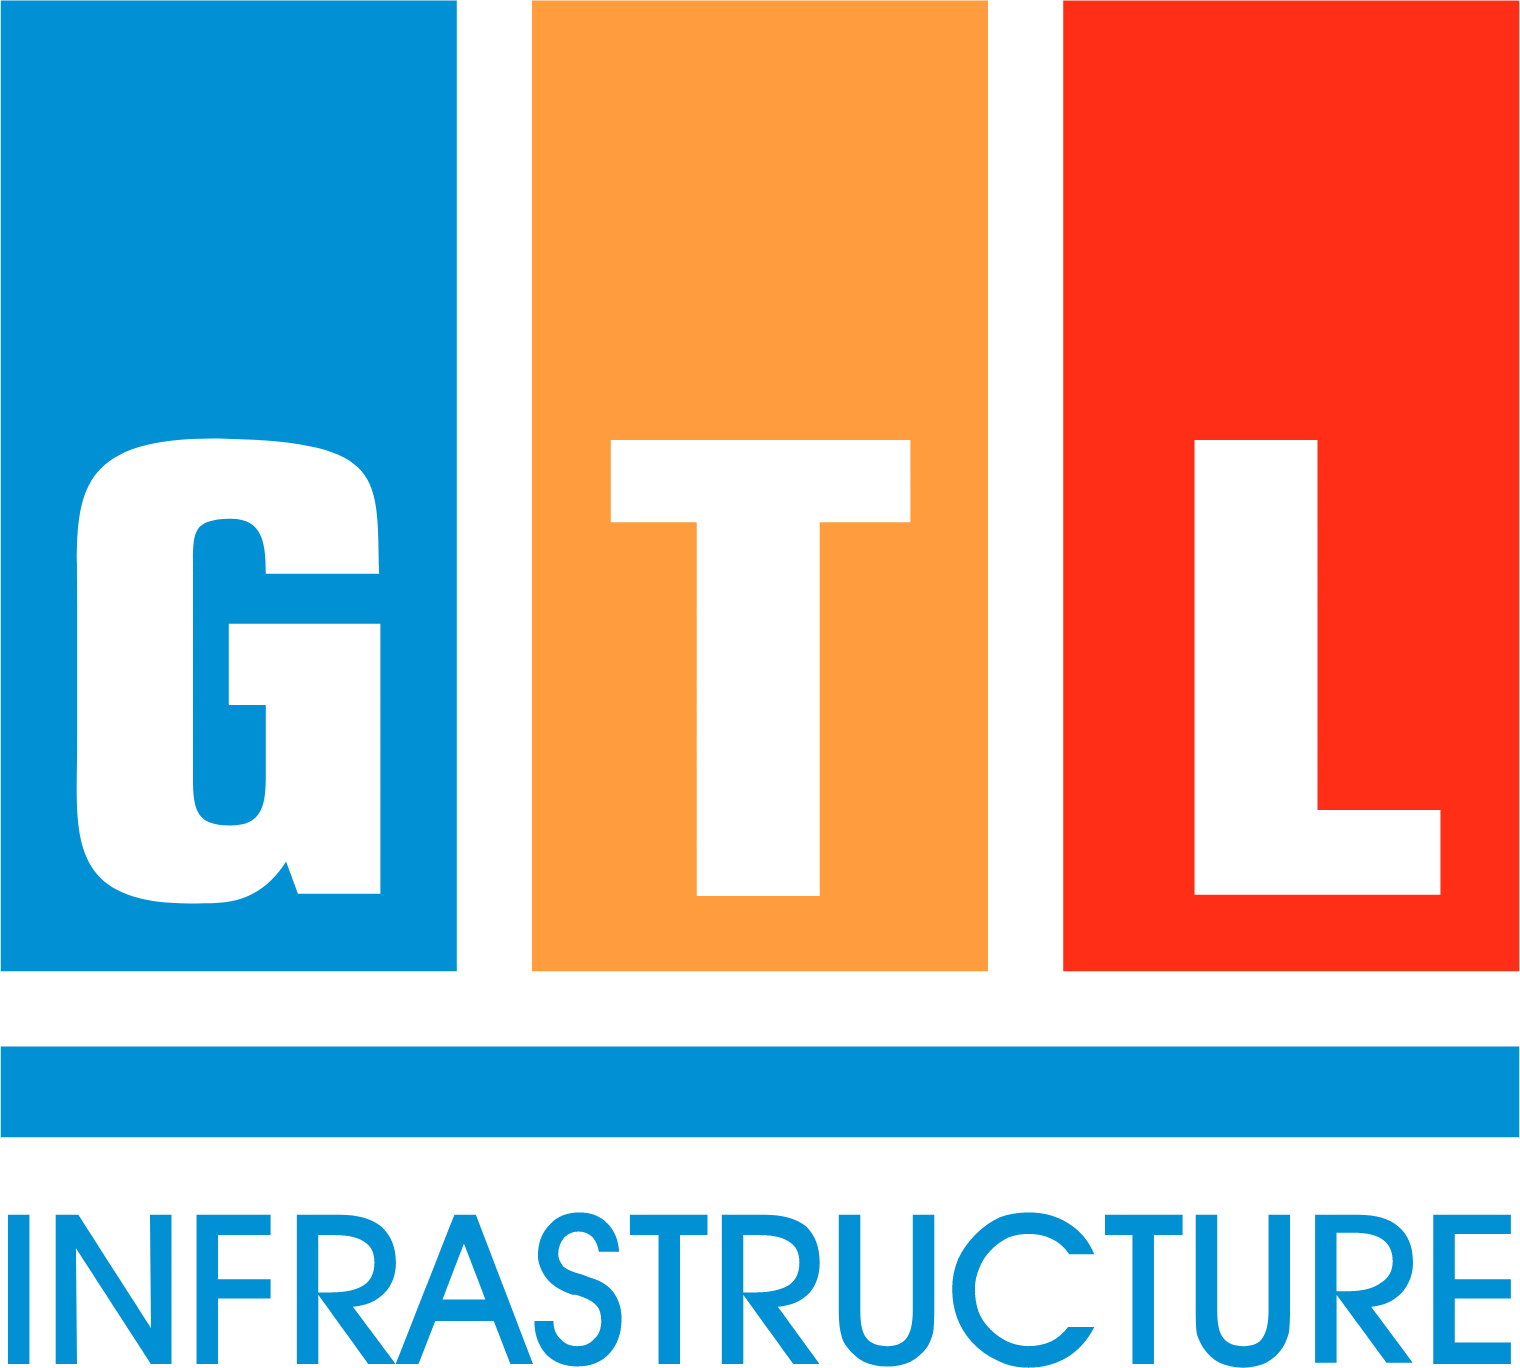 CG-LA Infrastructure